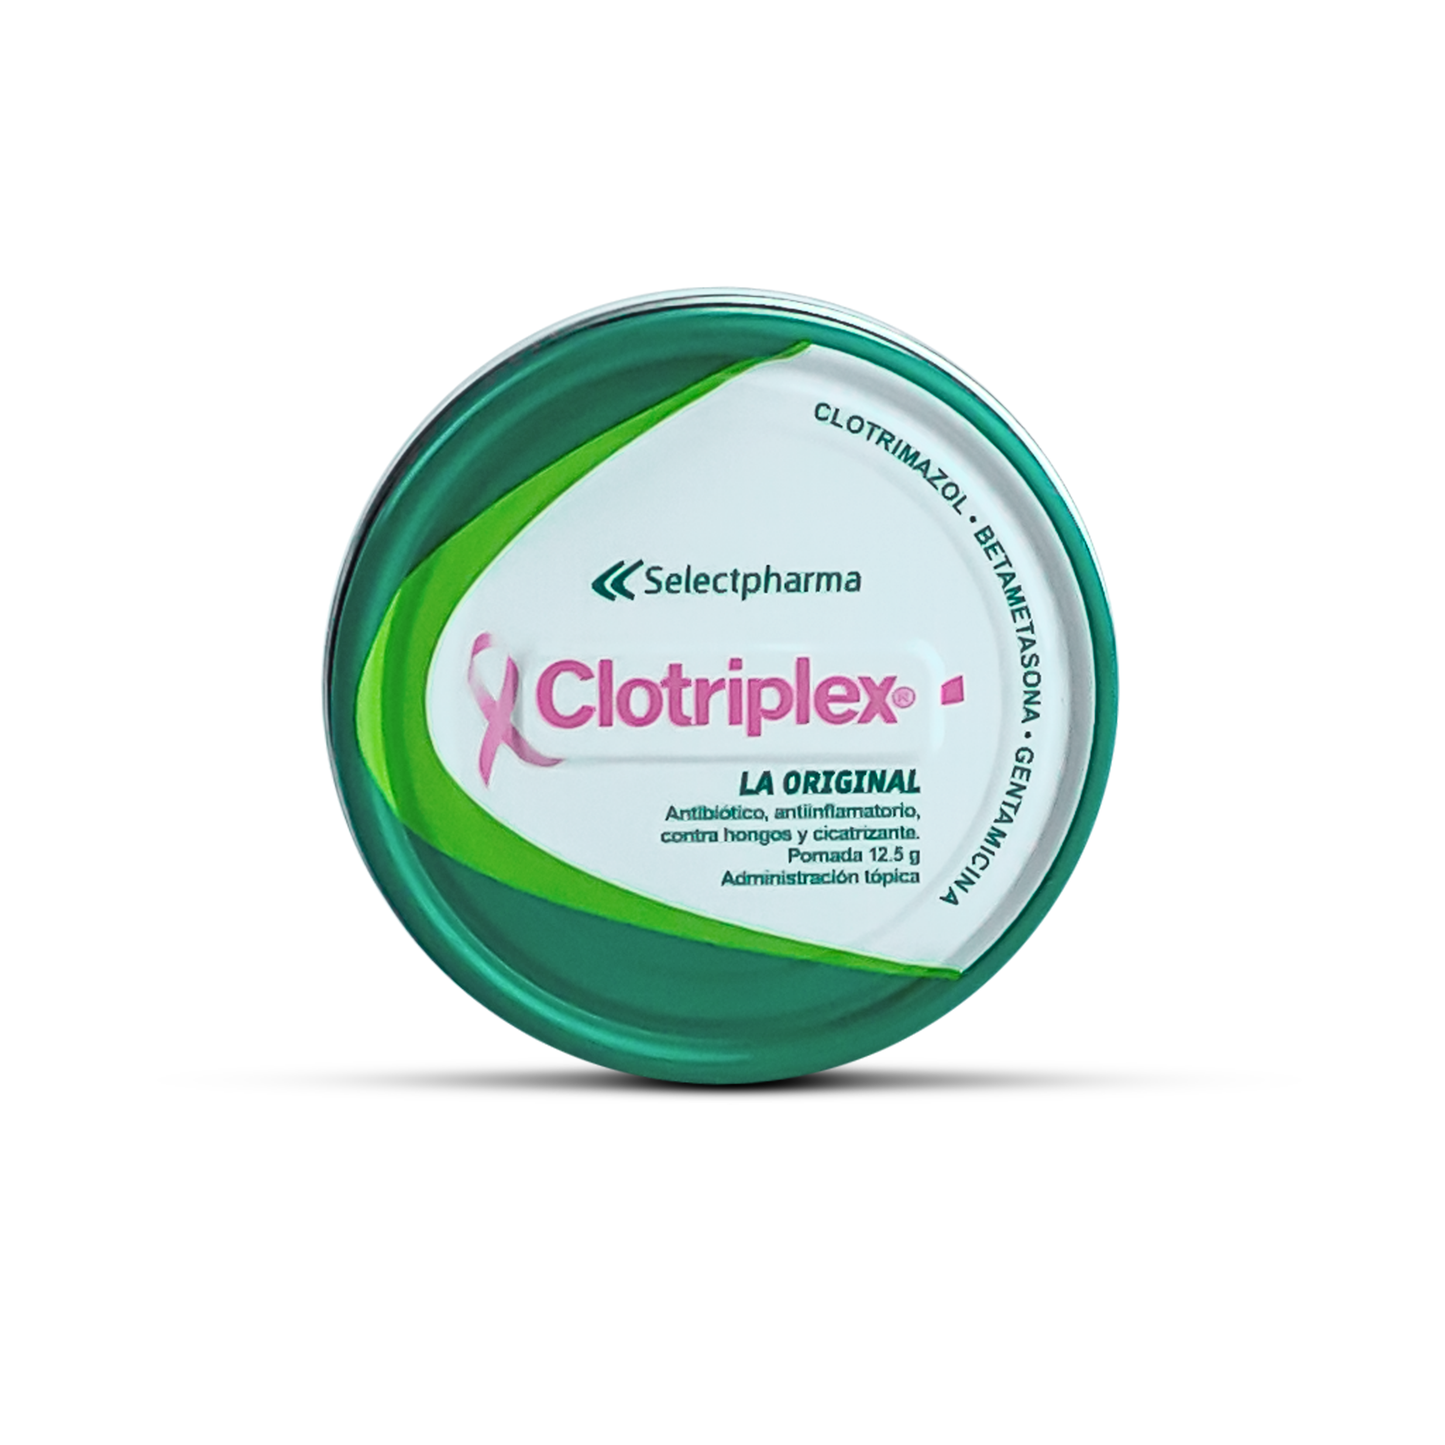 Clotriplex La Original